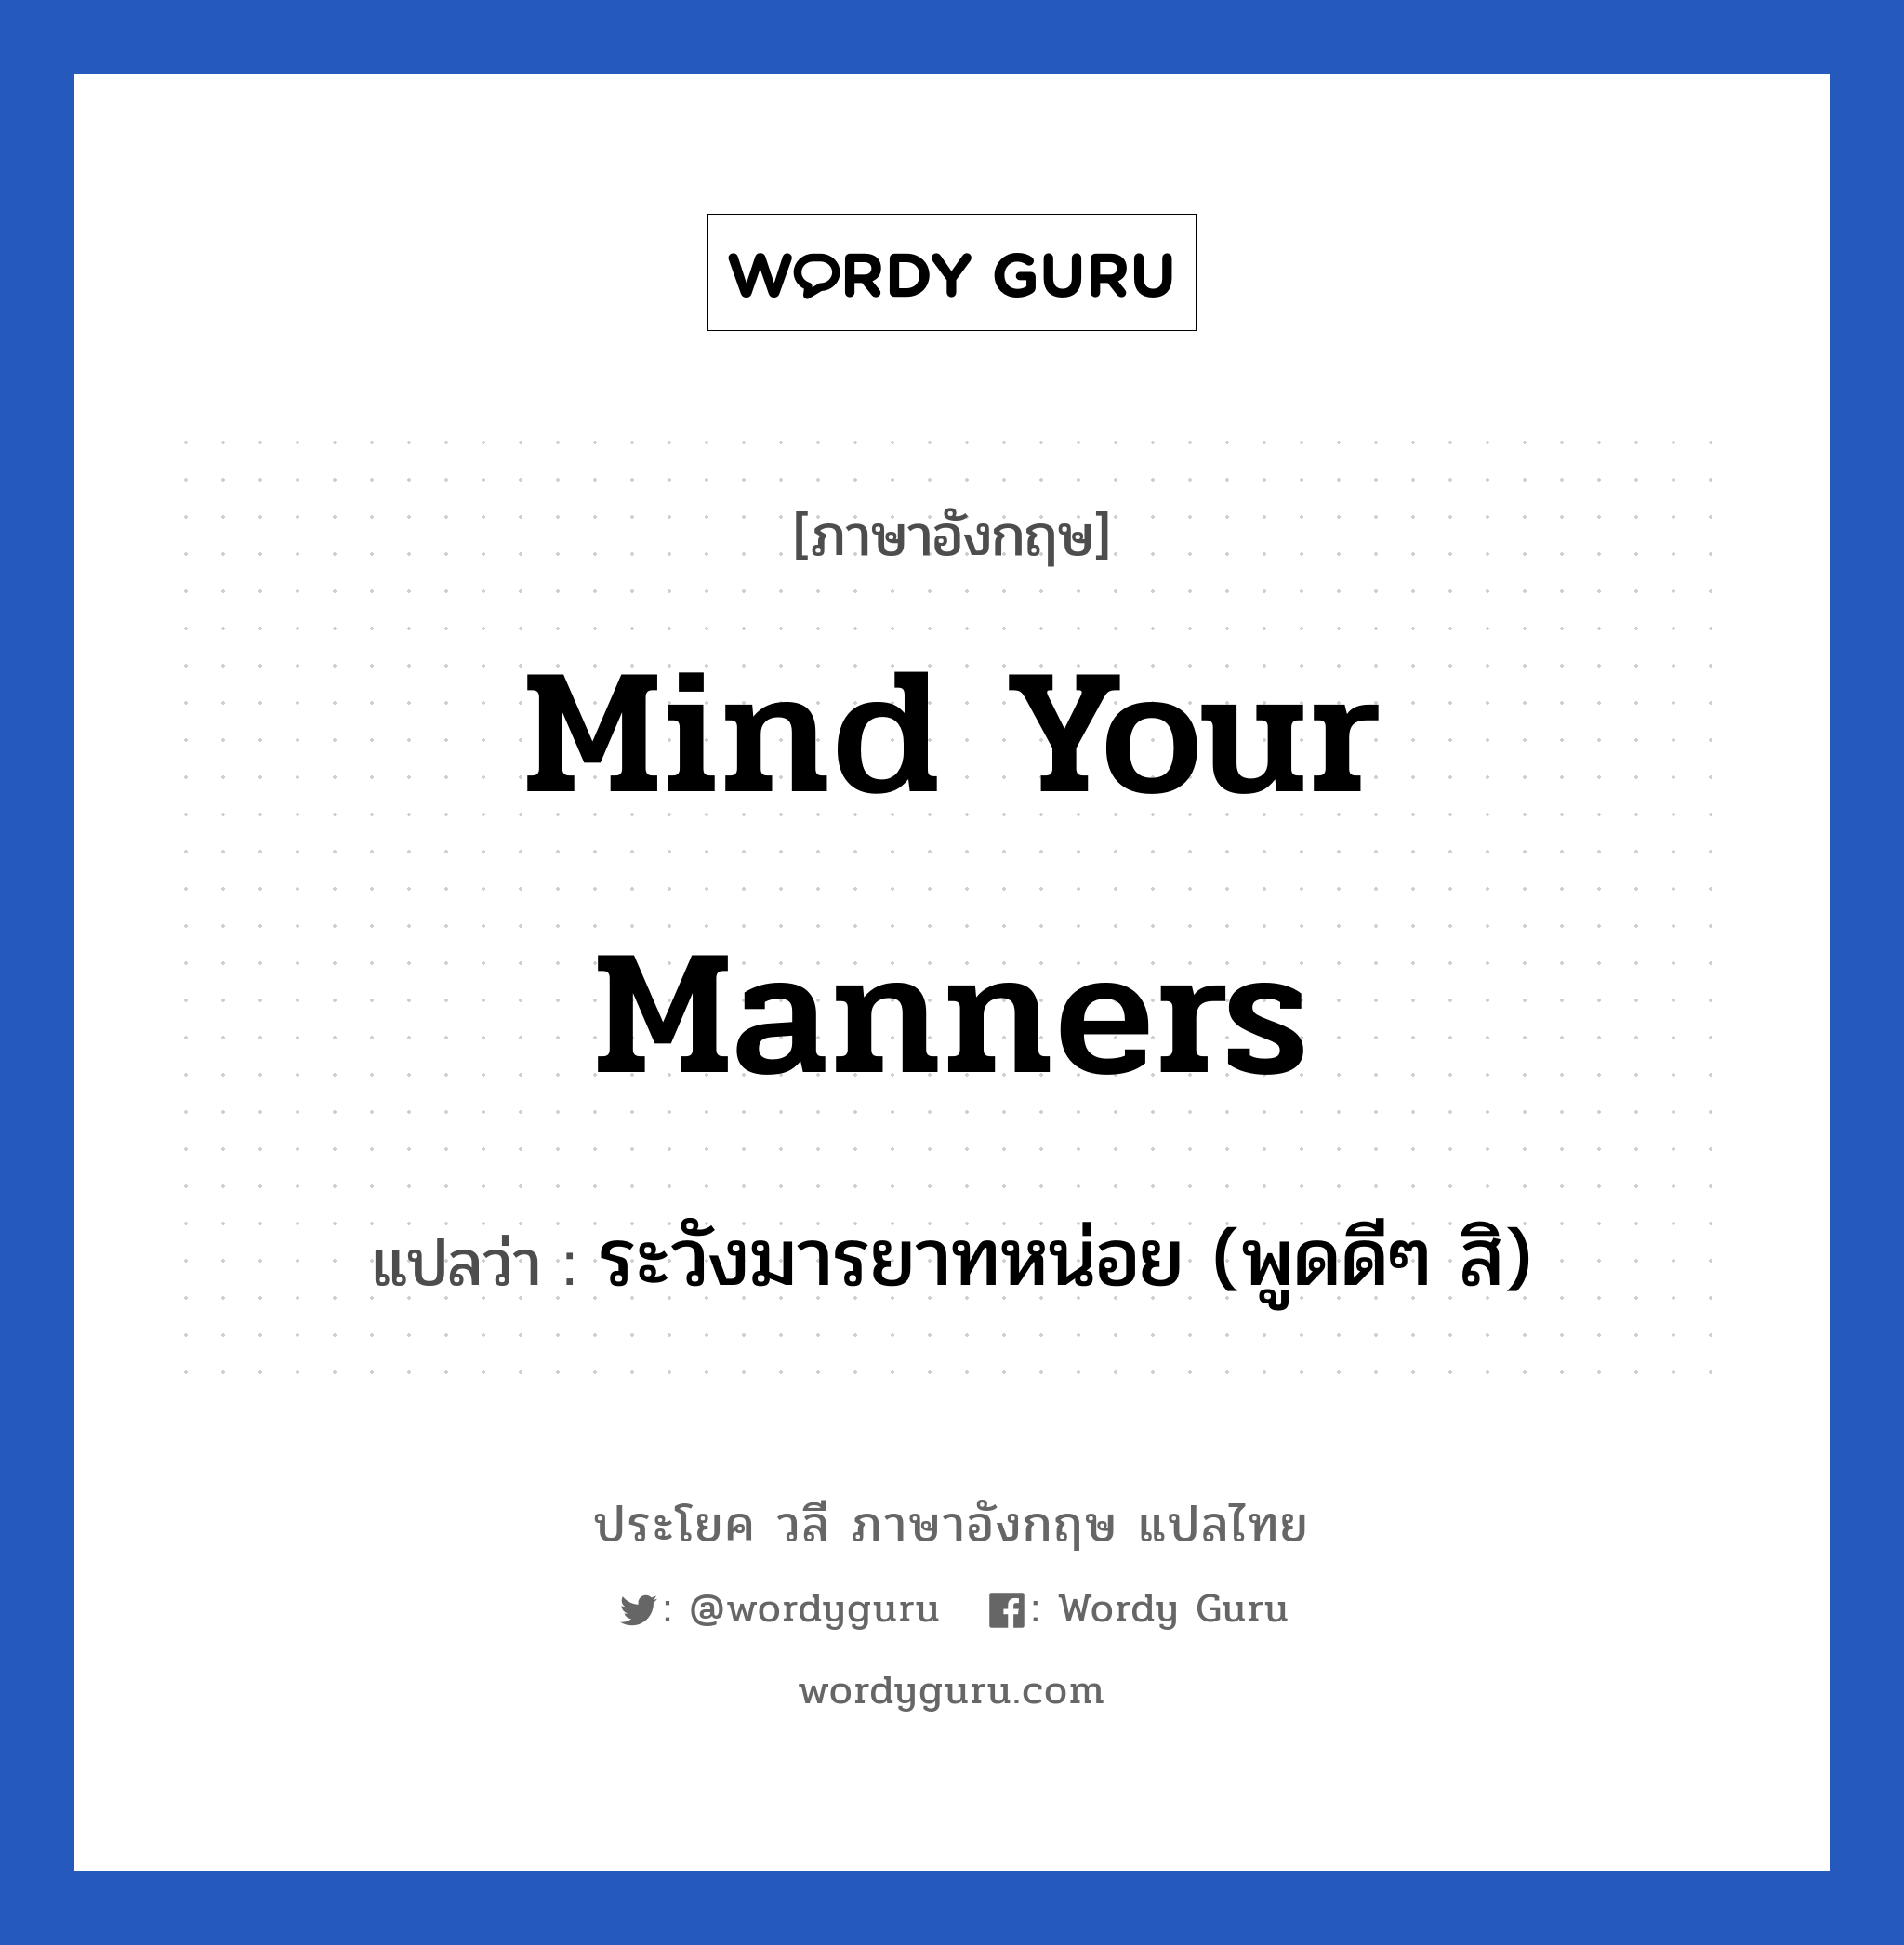 ระวังมารยาทหน่อย (พูดดีๆ สิ) ภาษาอังกฤษ?, วลีภาษาอังกฤษ ระวังมารยาทหน่อย (พูดดีๆ สิ) แปลว่า Mind your manners